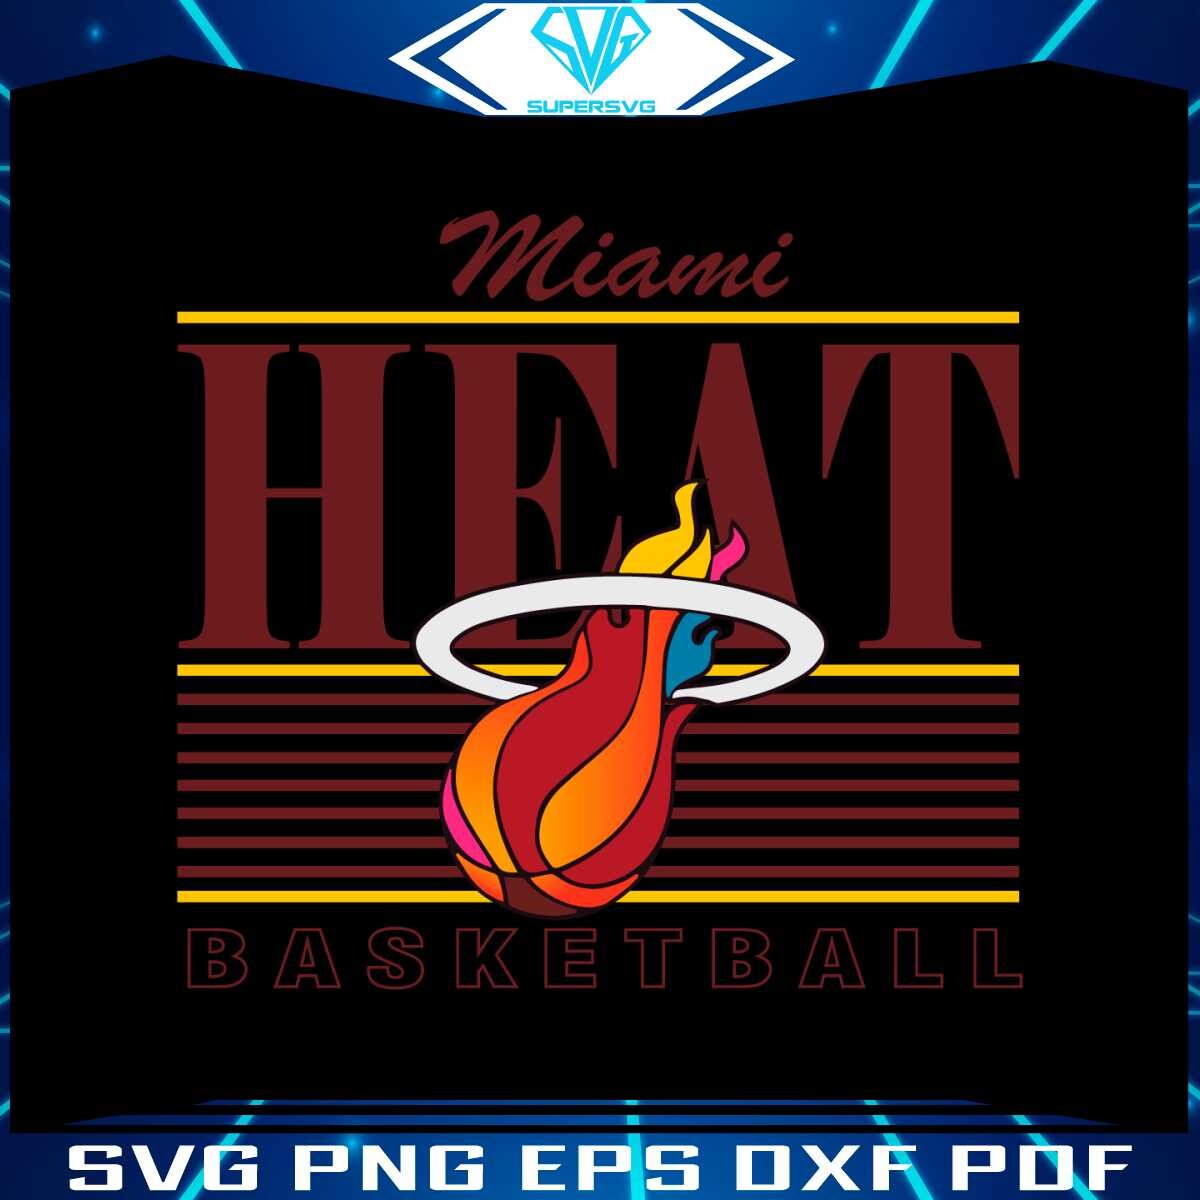 Miami heat Logo Poster